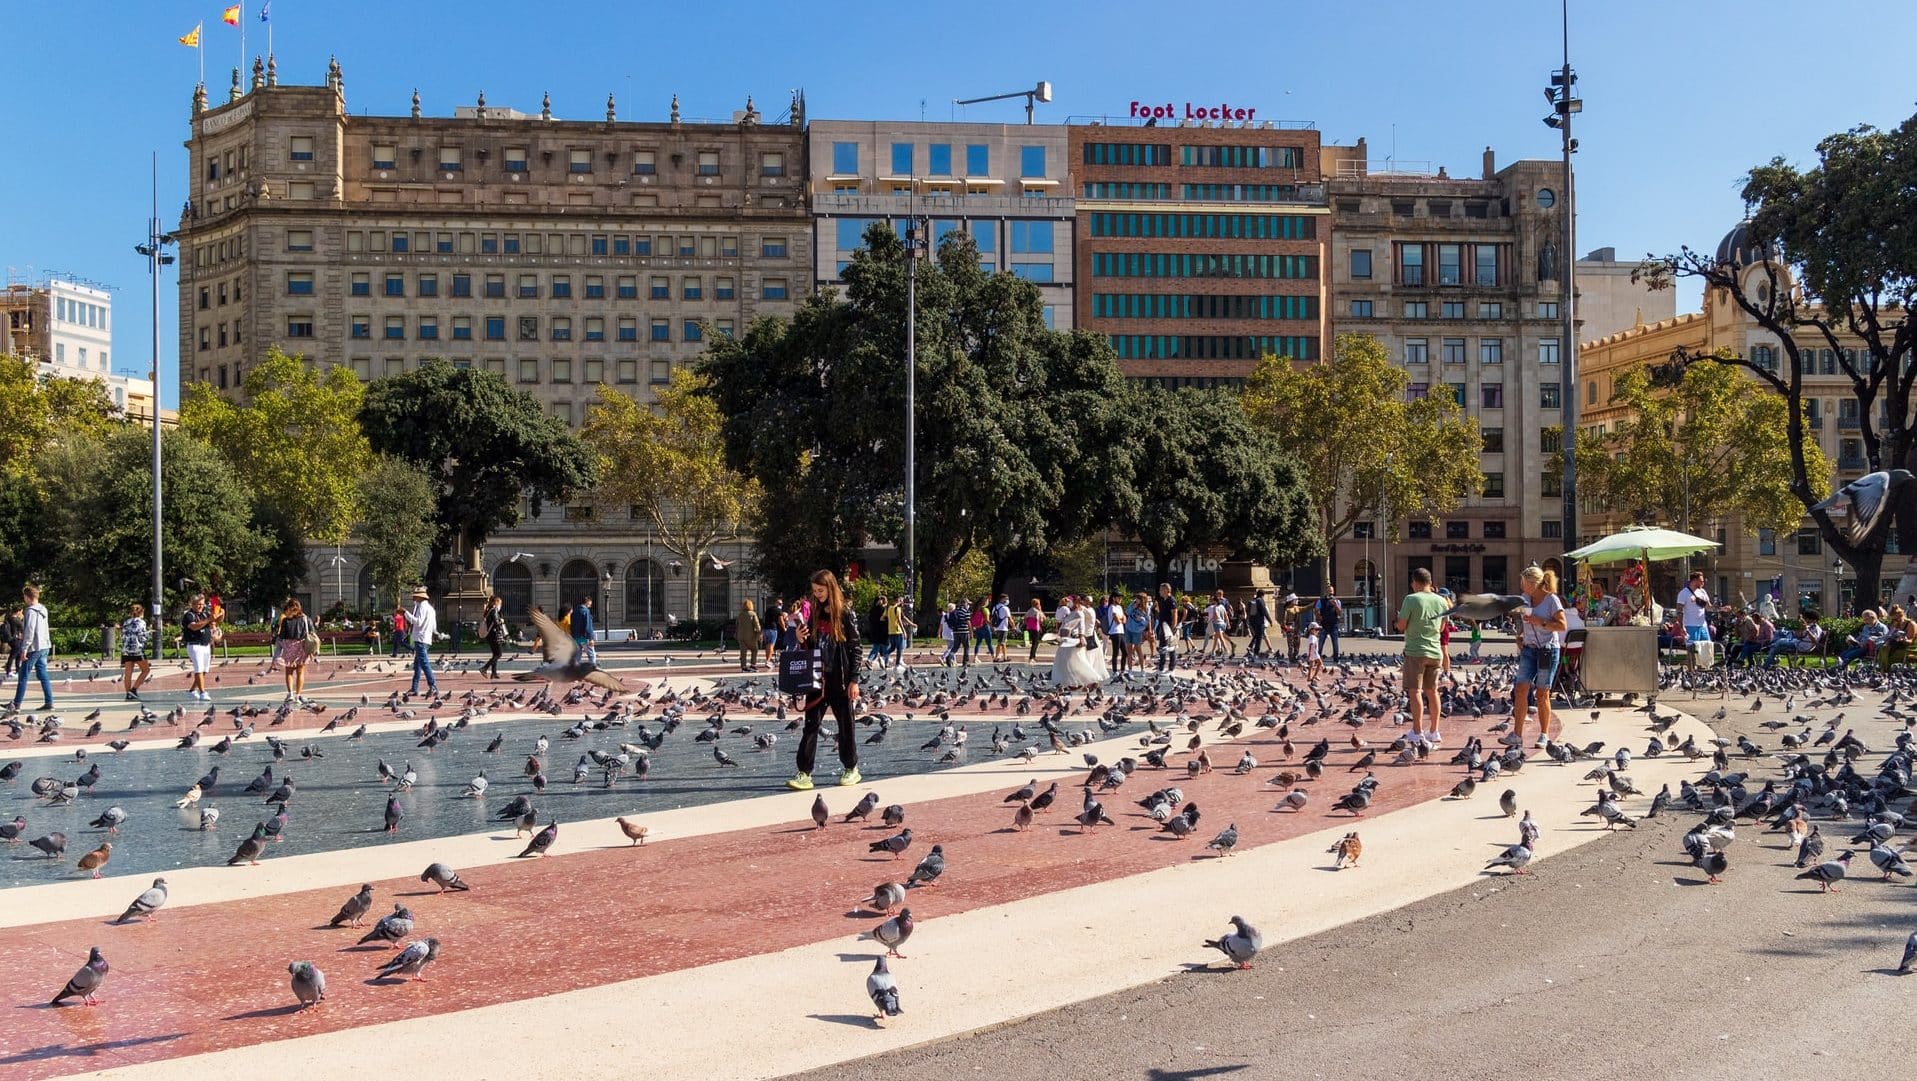 Plaça de Catalunya is considered the heart of Barcelona